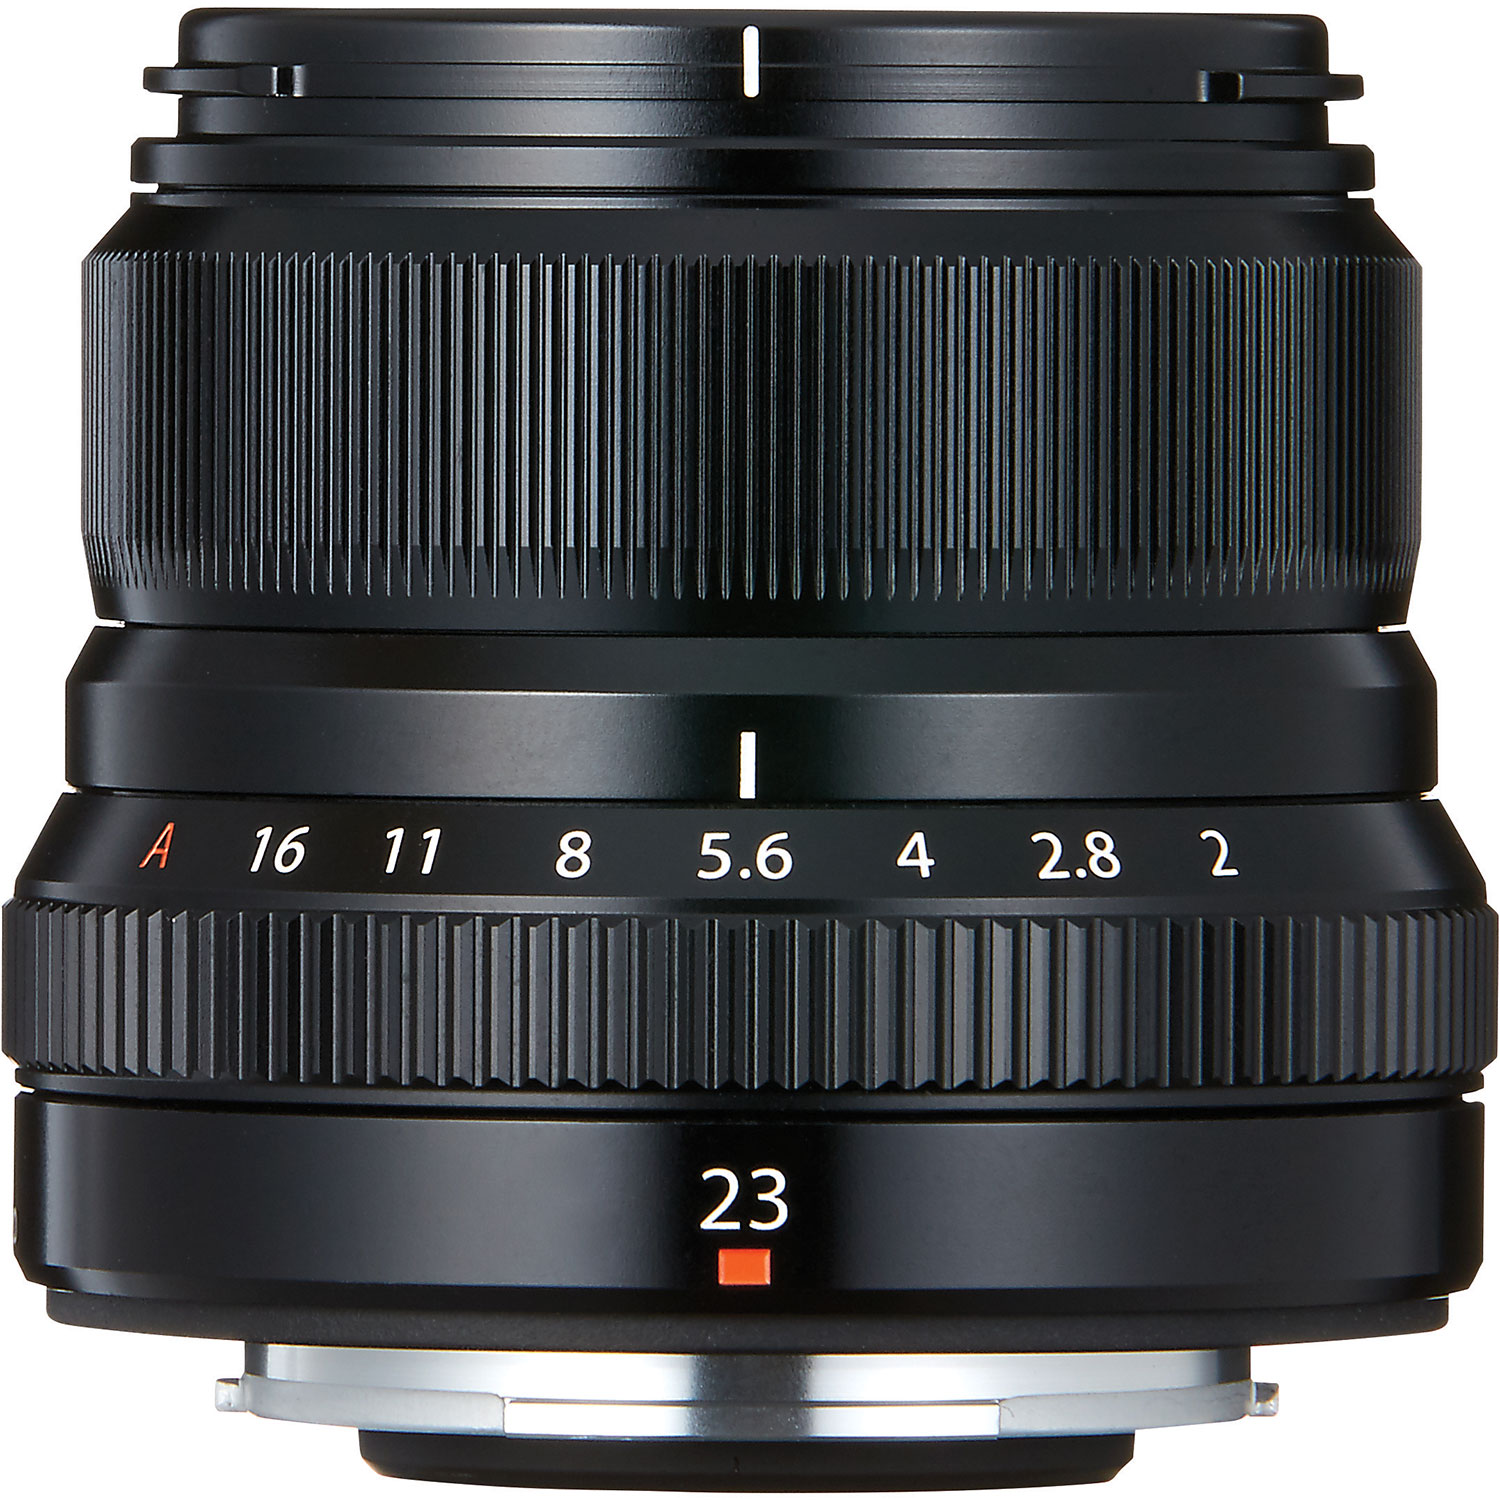 Fujifilm Fujinon XF 23mm f/2-16 R WR Lens - Black | Best Buy Canada